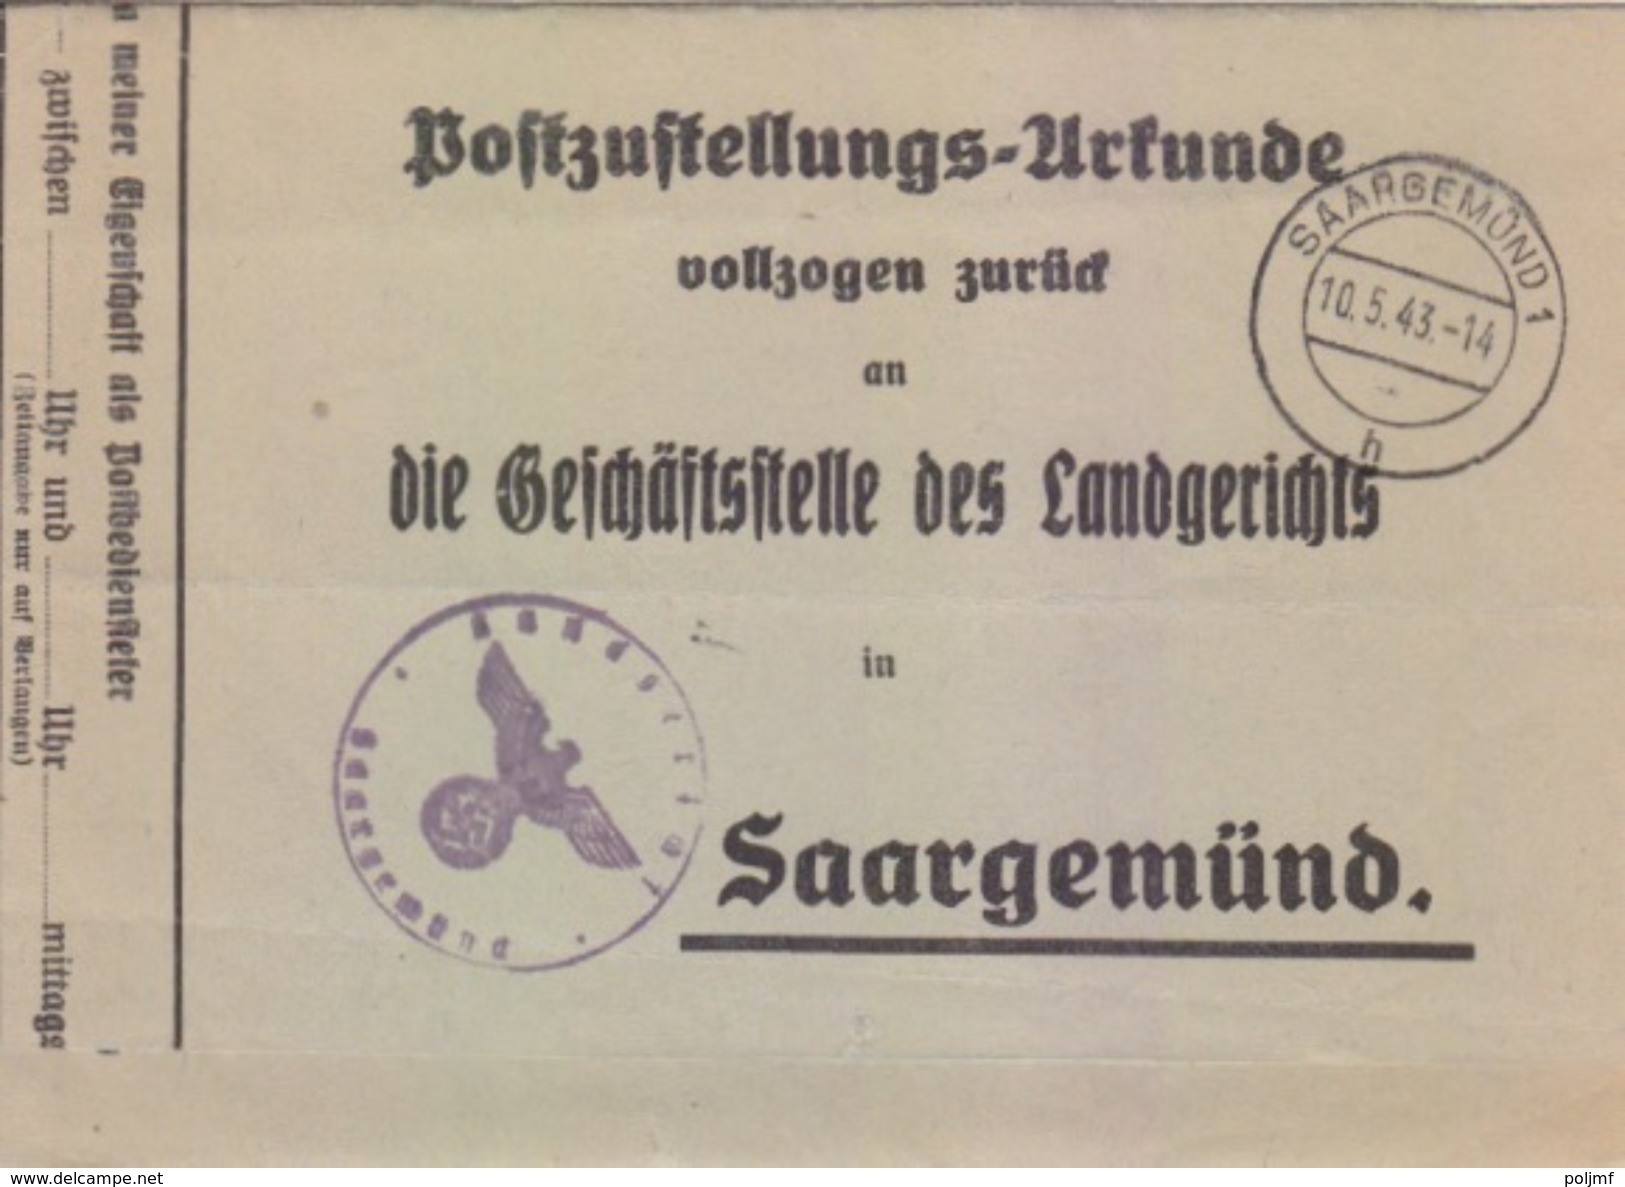 Certificat De Remise Obligatoire En PP Avec Lettre De Signification De Sarguemines (Saargemünd 1 H) Le 10/5/43 - Covers & Documents